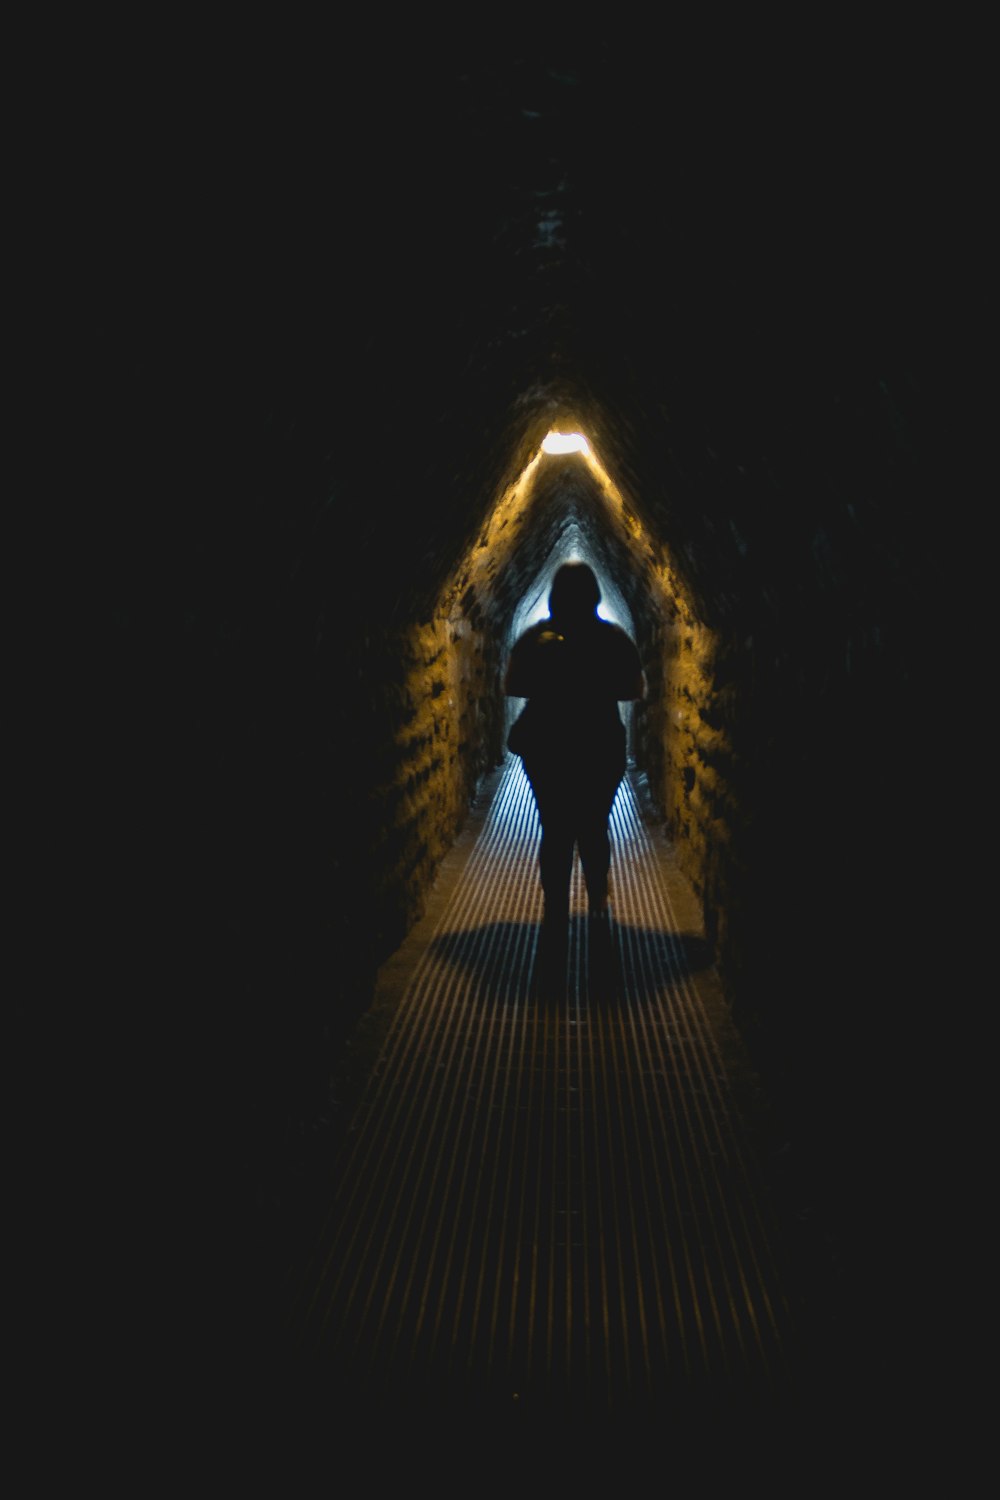 Una persona parada en un túnel con una luz al final